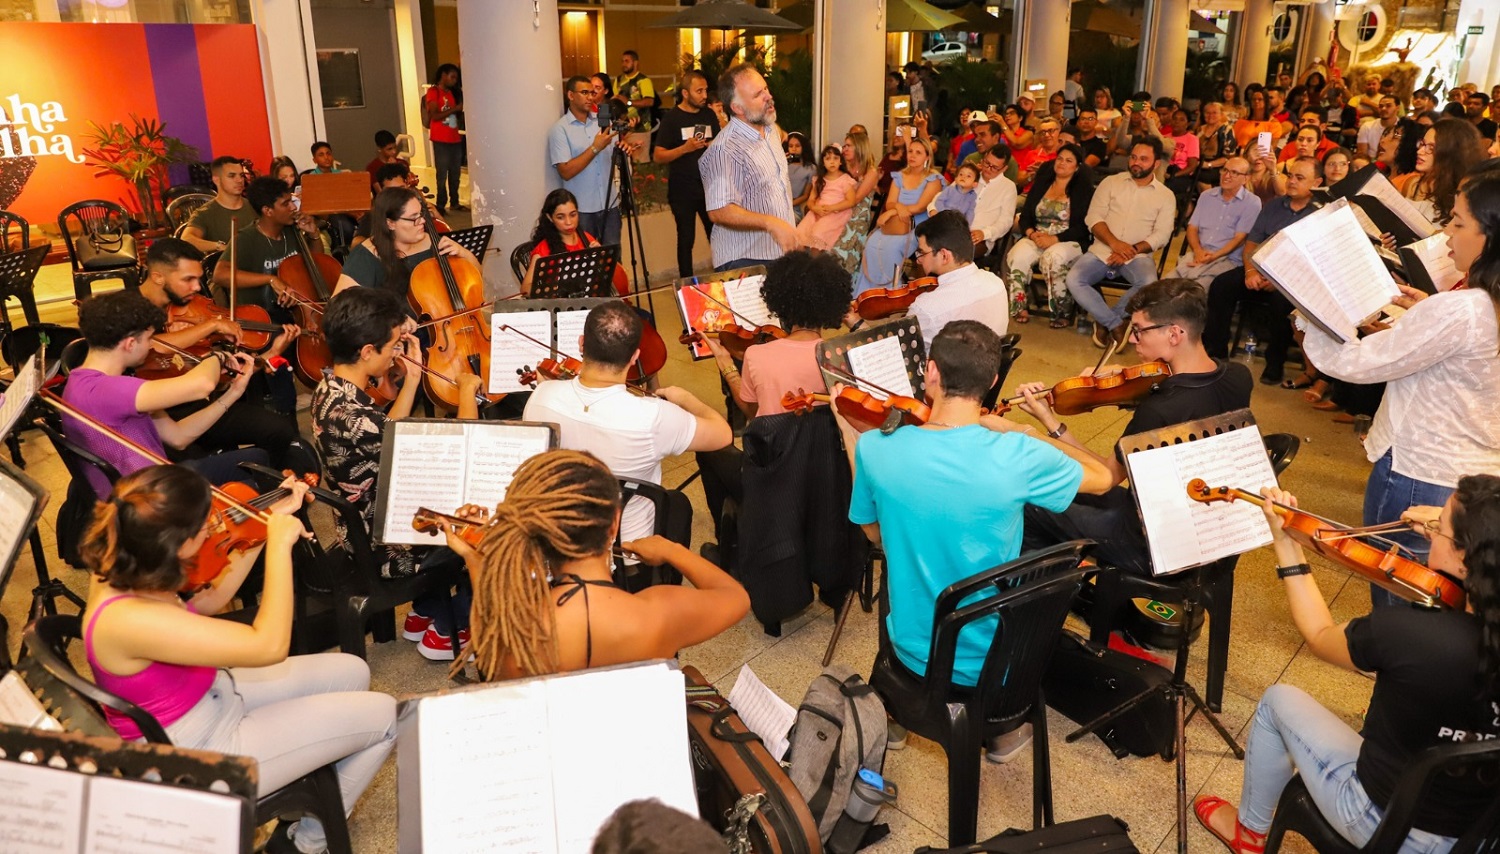 Evento contou com participação do Coro e Orquestra Sinfônica da UFS. (foto: Divulgação)